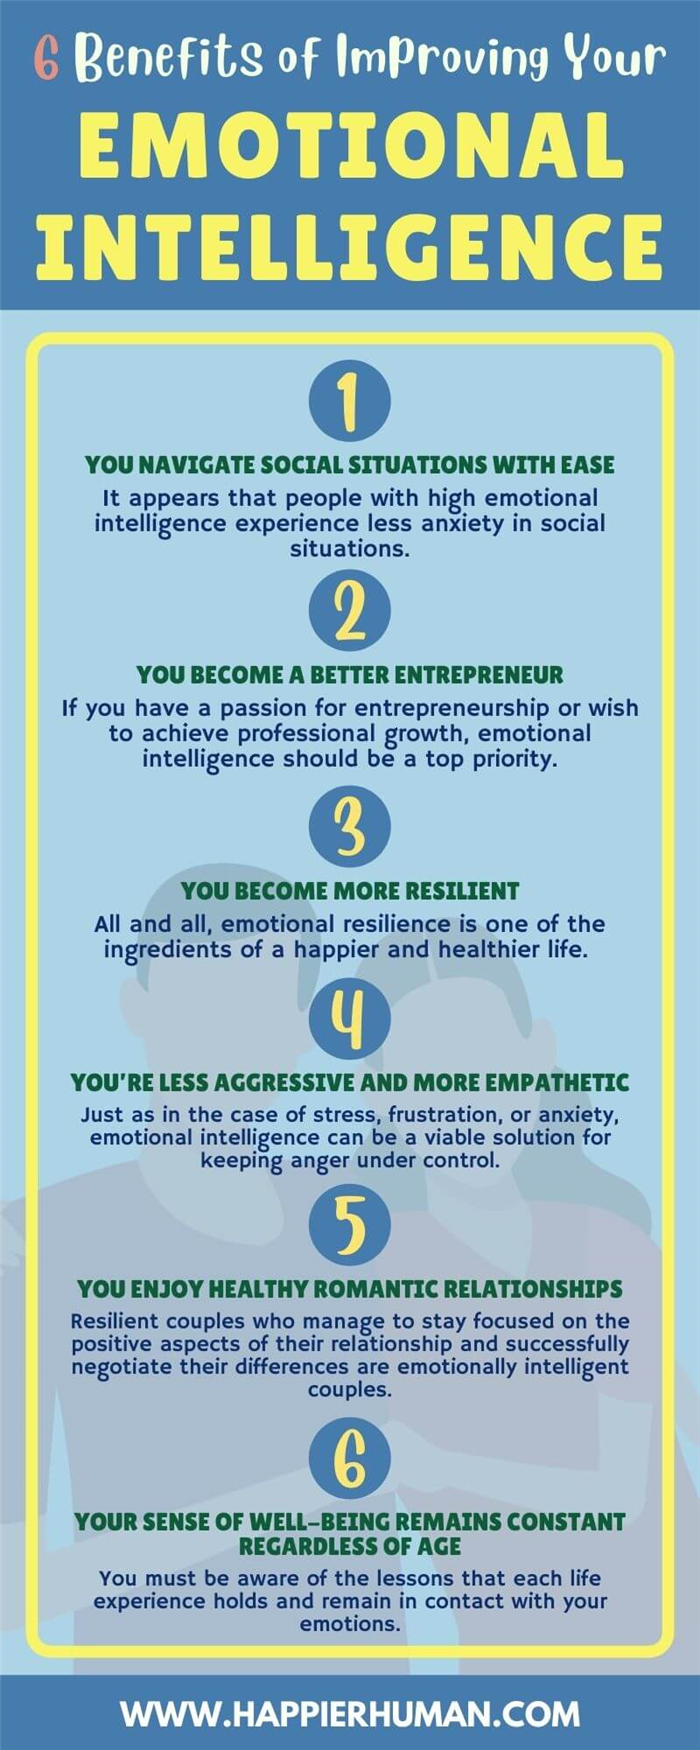 Восемь преимуществ эмоционального интеллектаЛичные преимущества эмоционального интеллекта |Профессиональные преимущества эмоционального интеллекта